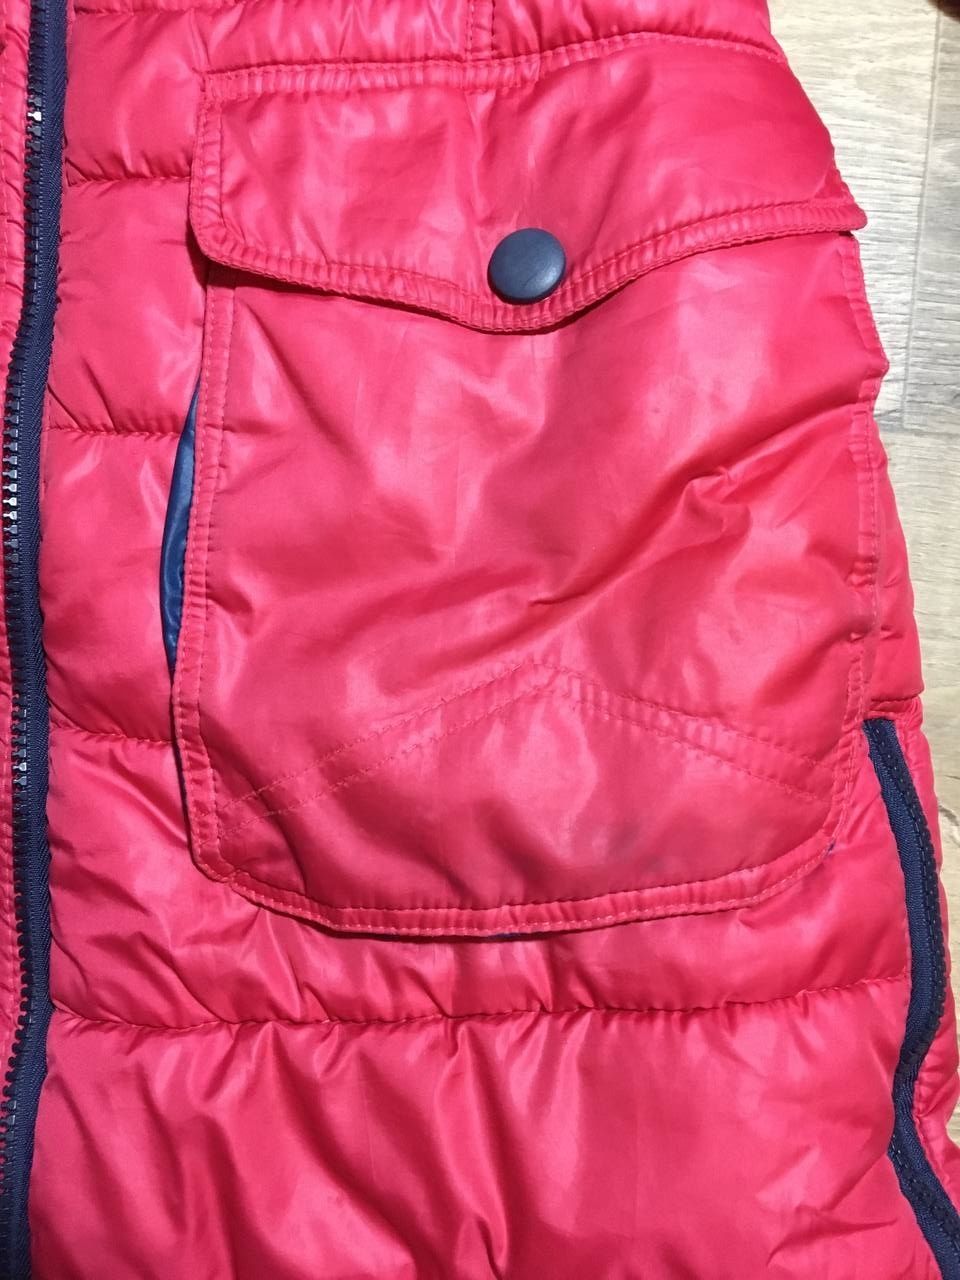 Зимняя тёплая куртка на девочку 9-11 лет розовая